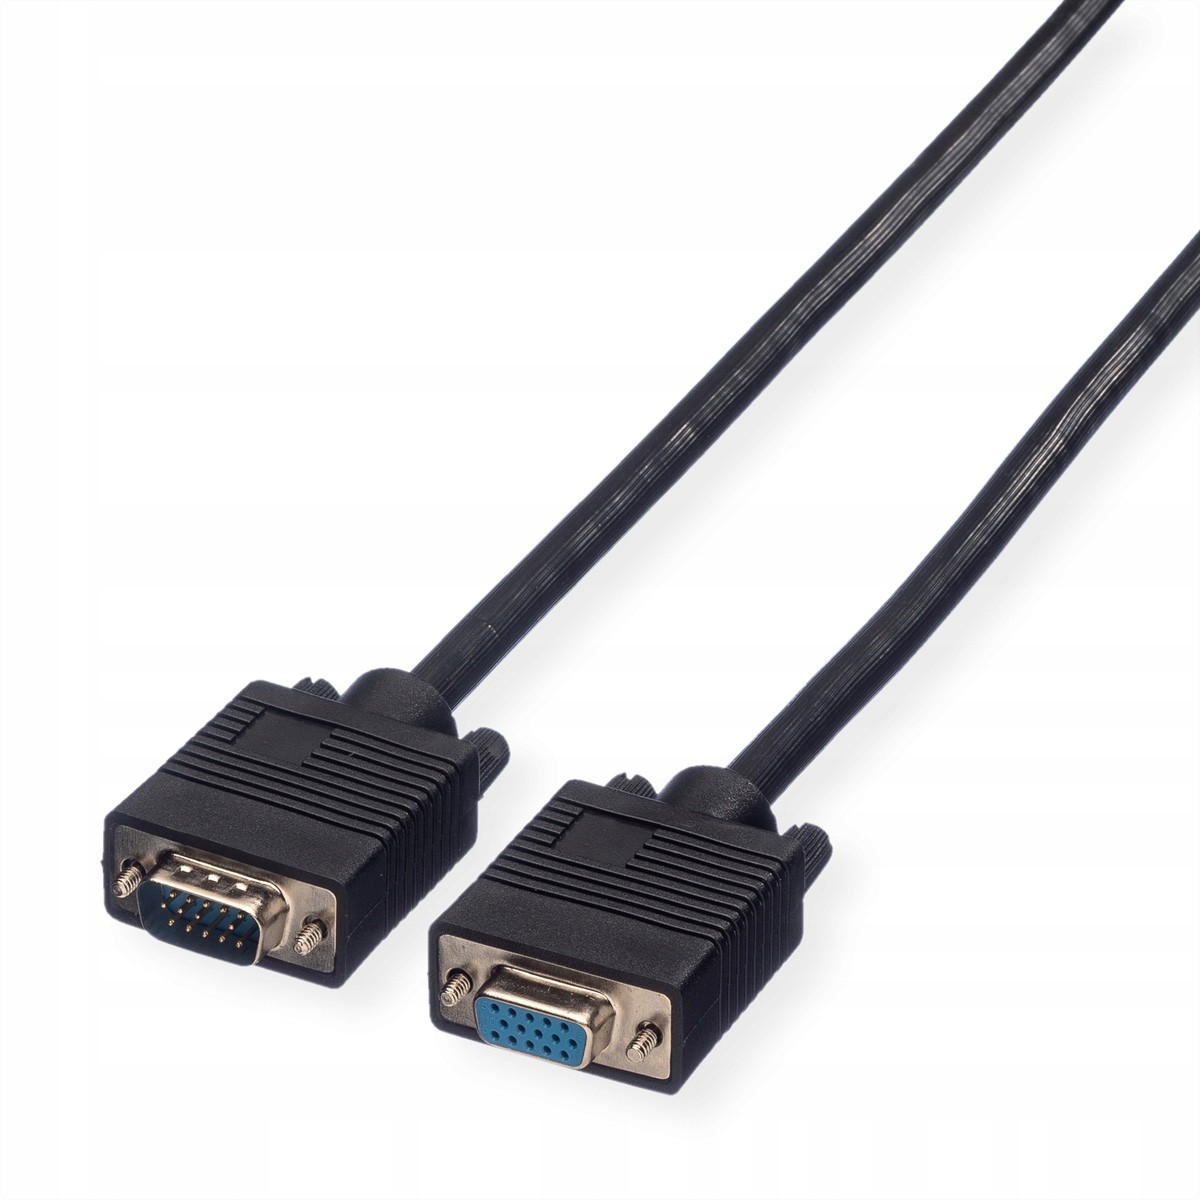 Kabel pro Vga monitor HD15 M/f Hq 20m